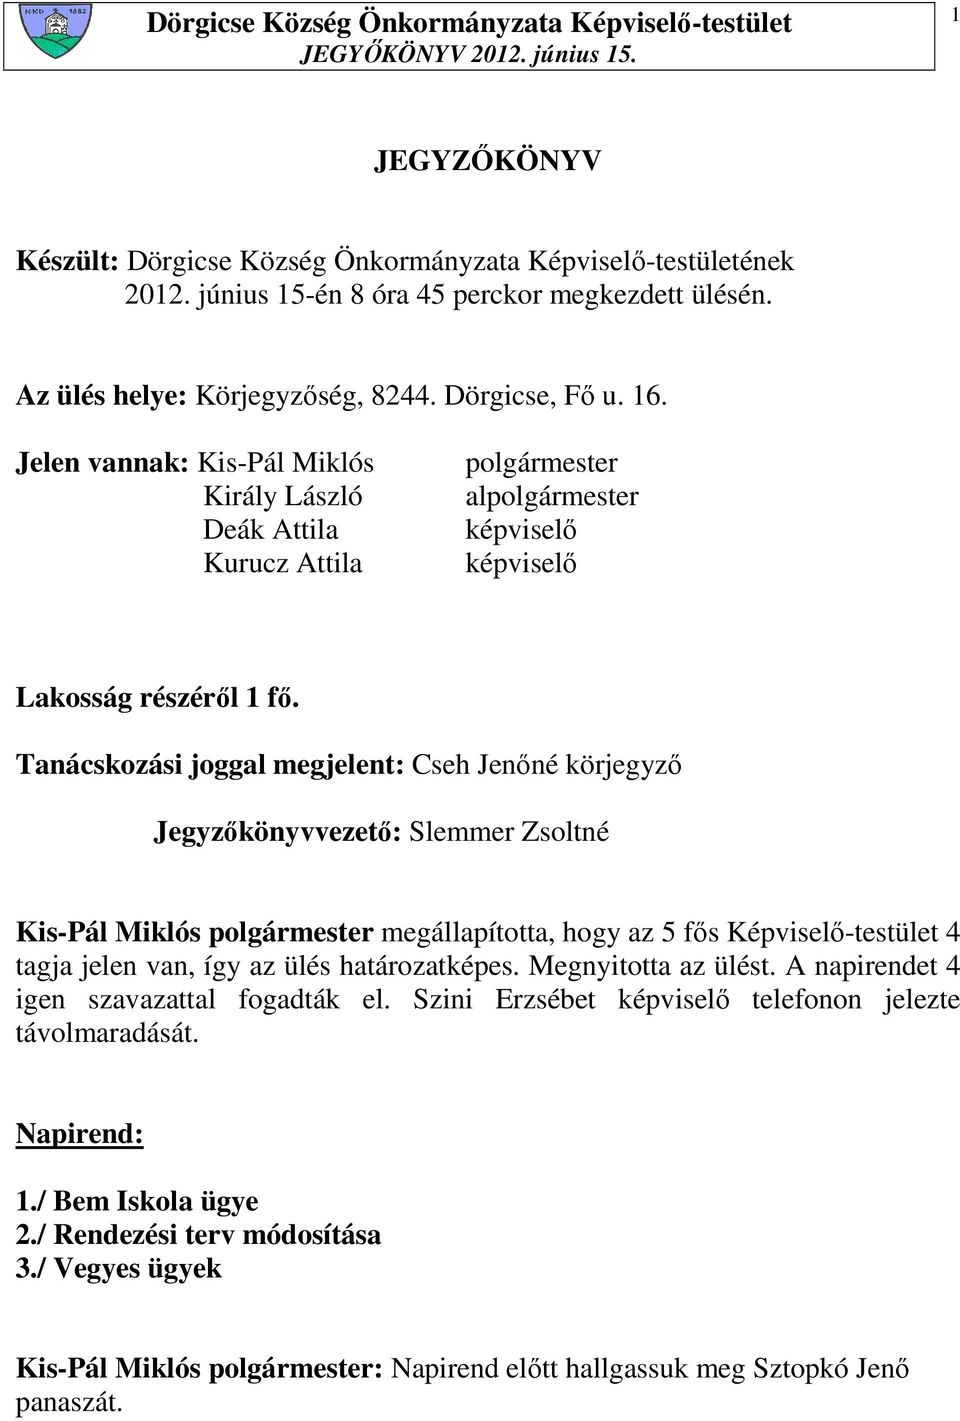 Tanácskozási joggal megjelent: Cseh Jenıné körjegyzı Jegyzıkönyvvezetı: Slemmer Zsoltné Kis-Pál Miklós polgármester megállapította, hogy az 5 fıs Képviselı-testület 4 tagja jelen van, így az ülés